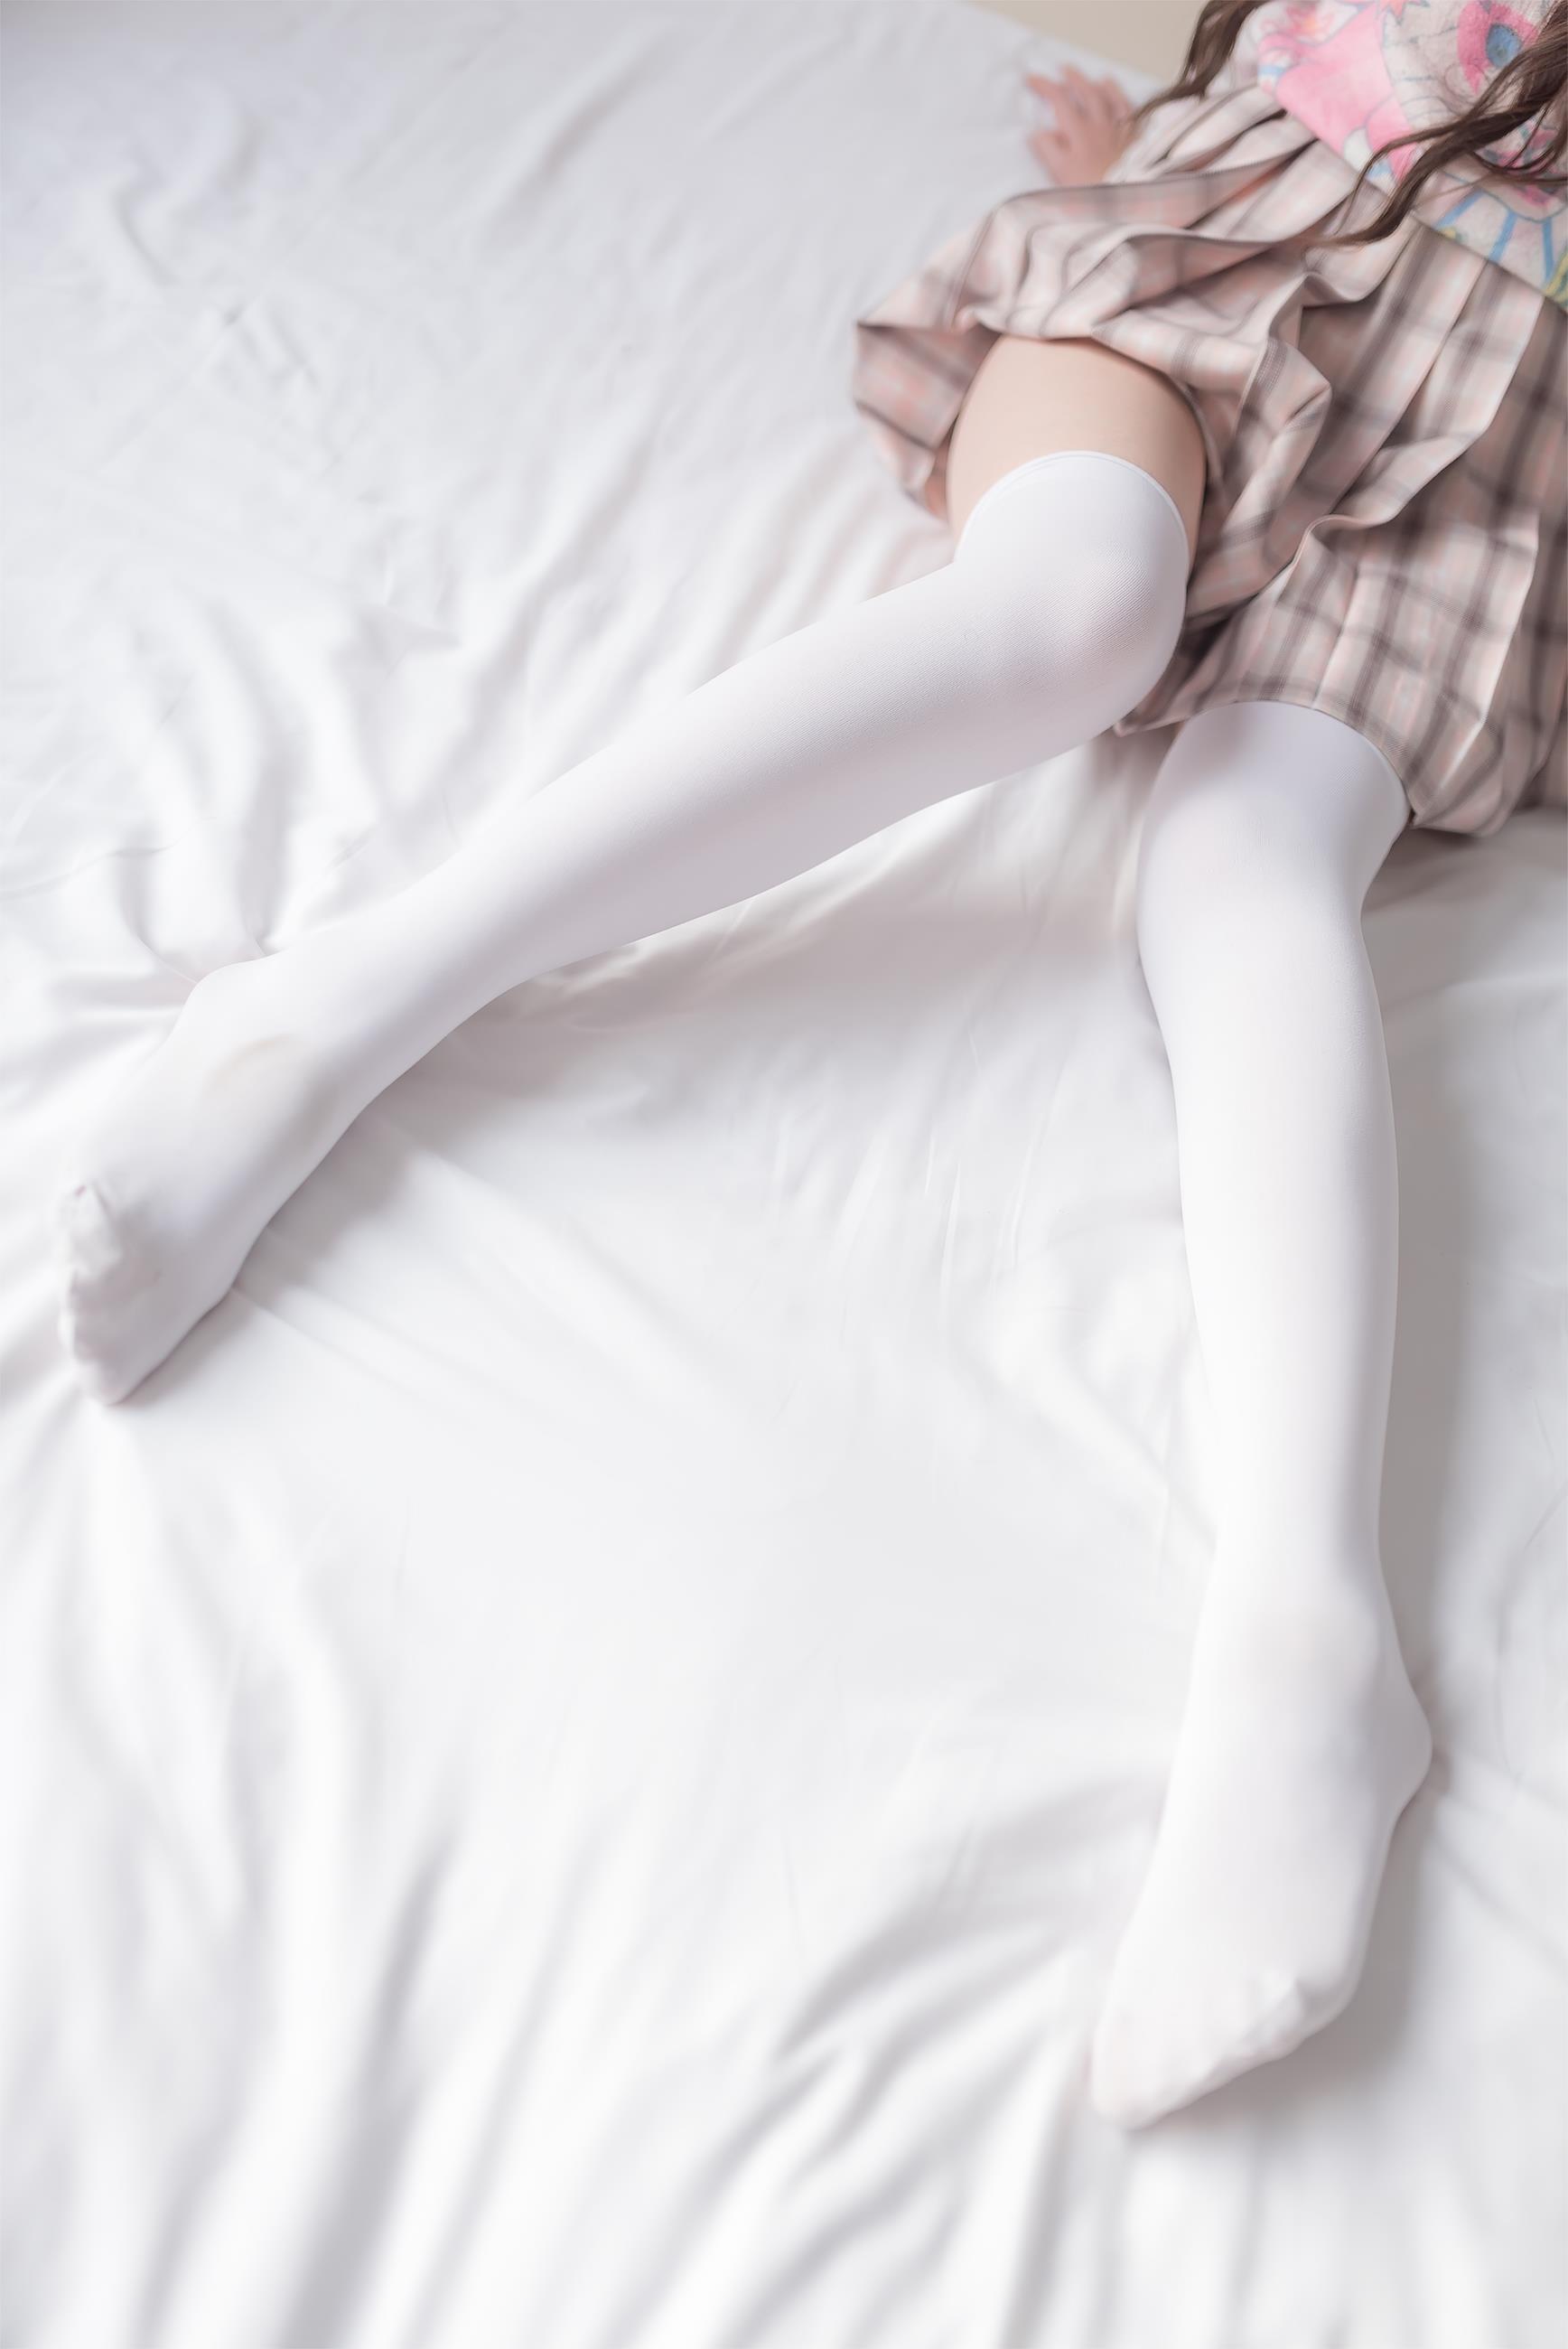 [风之领域]NO.012 性感小萝莉 粉色外套与米色格子短裙加白色丝袜美腿玉足私房写真集,